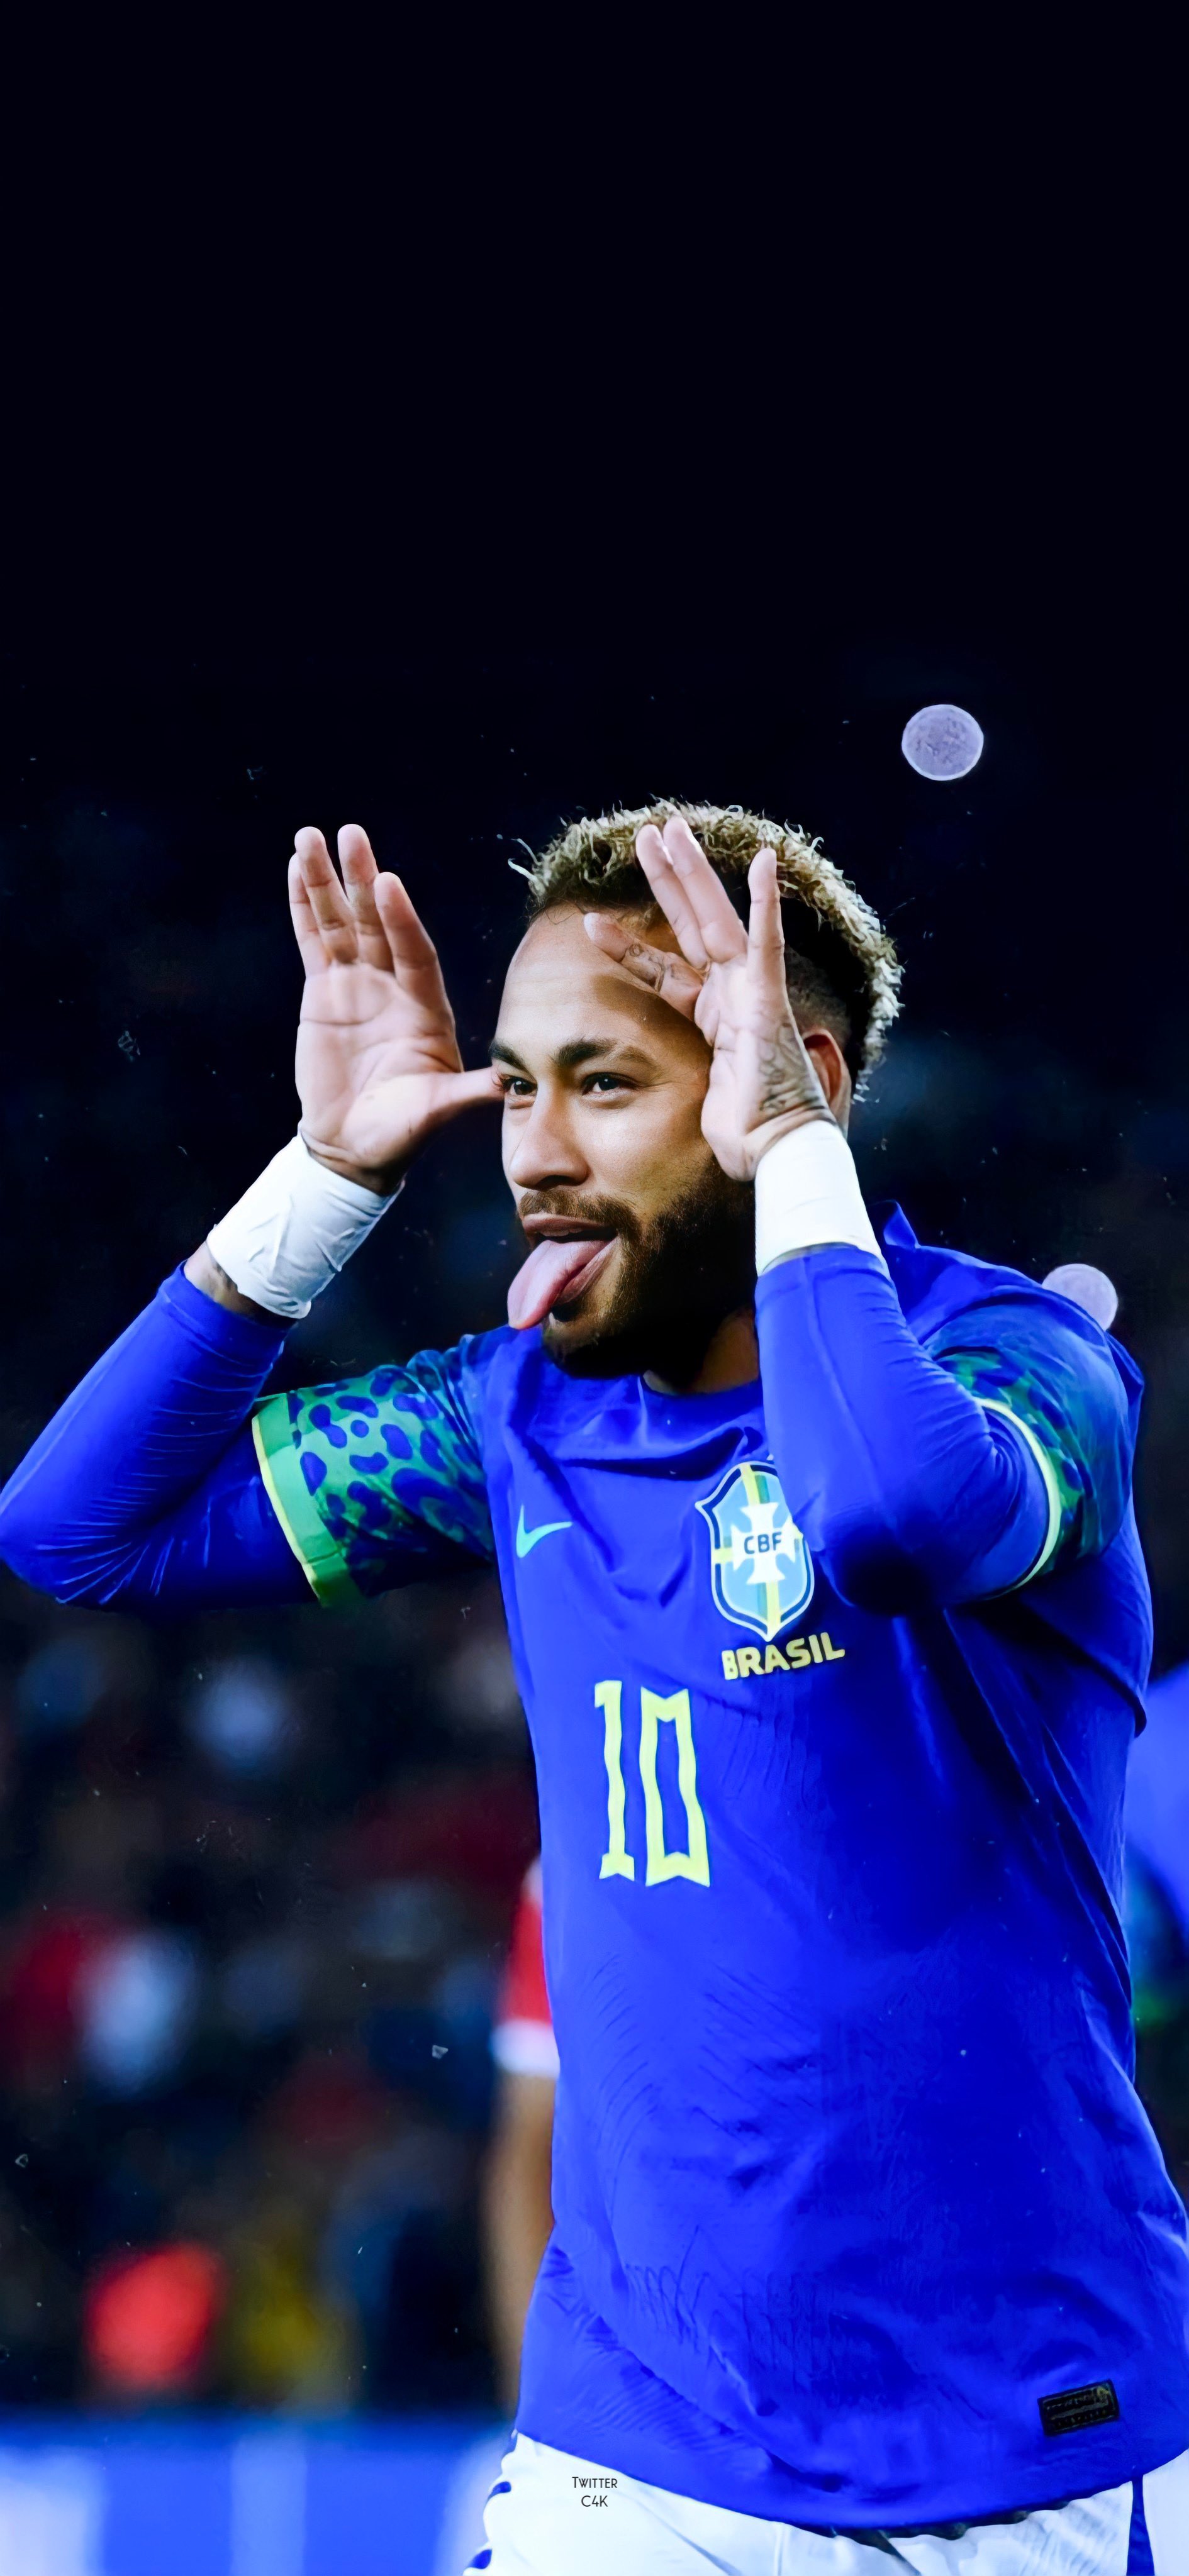 Neymar J 2024 Wallpapers: Những hình nền của Neymar được thiết kế riêng cho mùa giải 2024, đặc biệt, ấn tượng và độc đáo. Xem ngay để tìm kiếm hình nền yêu thích của bạn và cùng tận hưởng những khoảnh khắc đầy cảm hứng của Neymar J trong mùa giải sắp tới này.